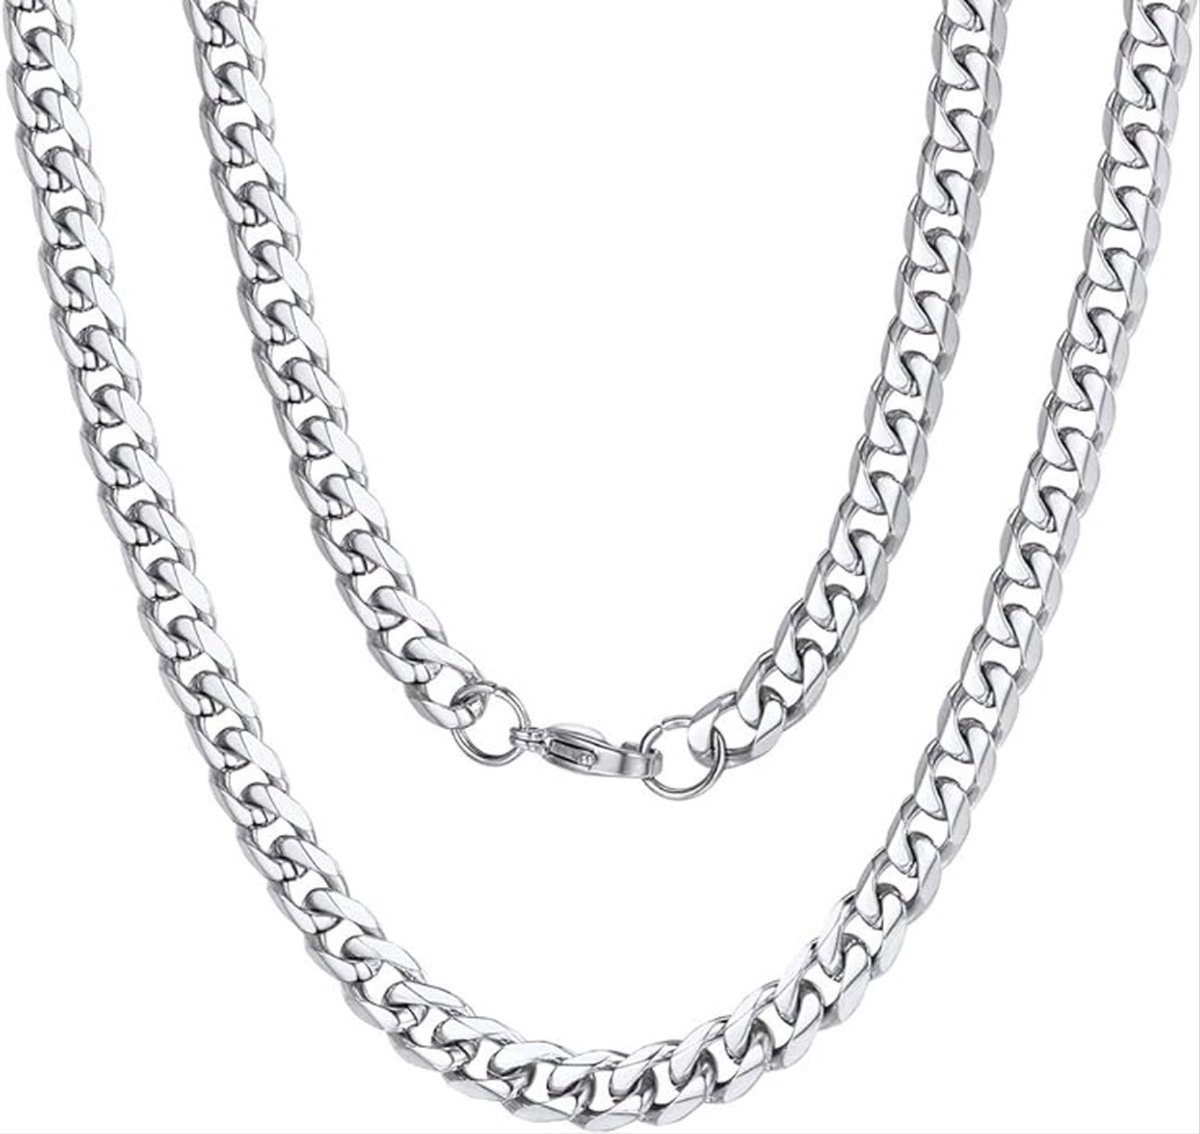 CHPN - Ketting - Zilverkleurige ketting - Schakelketting - Necklace - Chain - Zilverkleurig - 40CM - Unisex - Cadeautje - Mooie ketting - 3MM breed